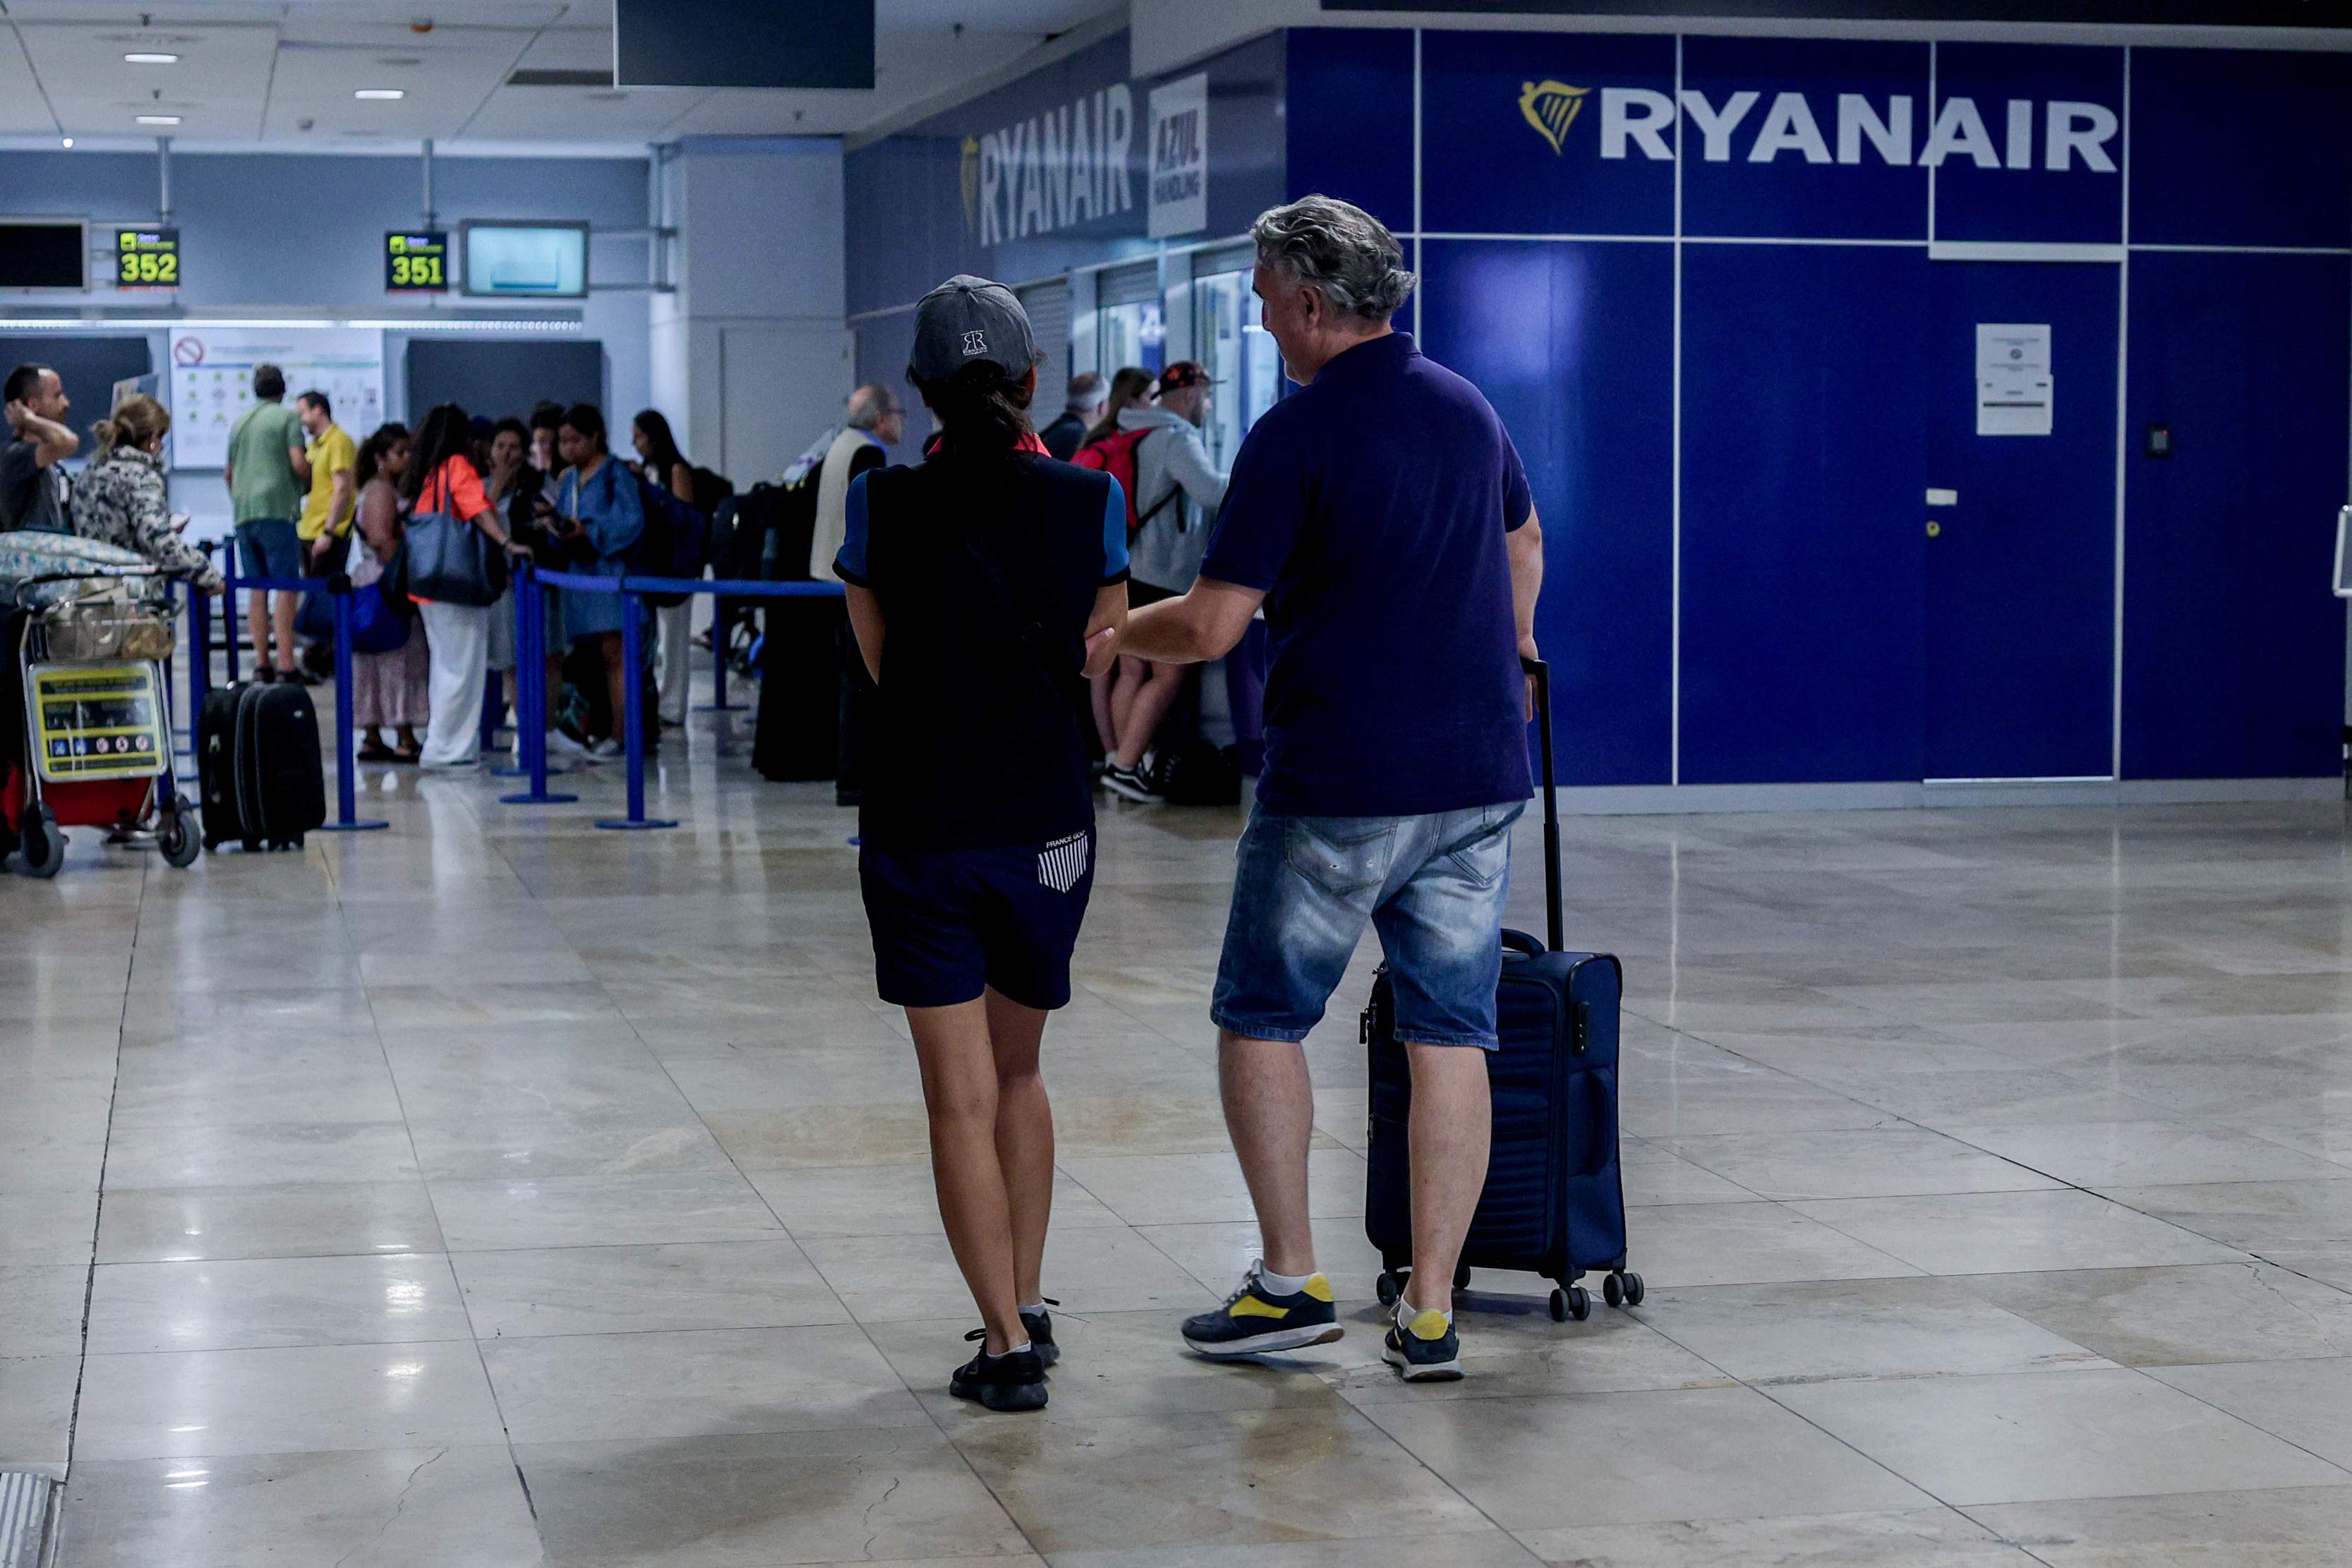 Les aerolínies low-cost arrasen: ja transporten el 60% de viatgers a Espanya